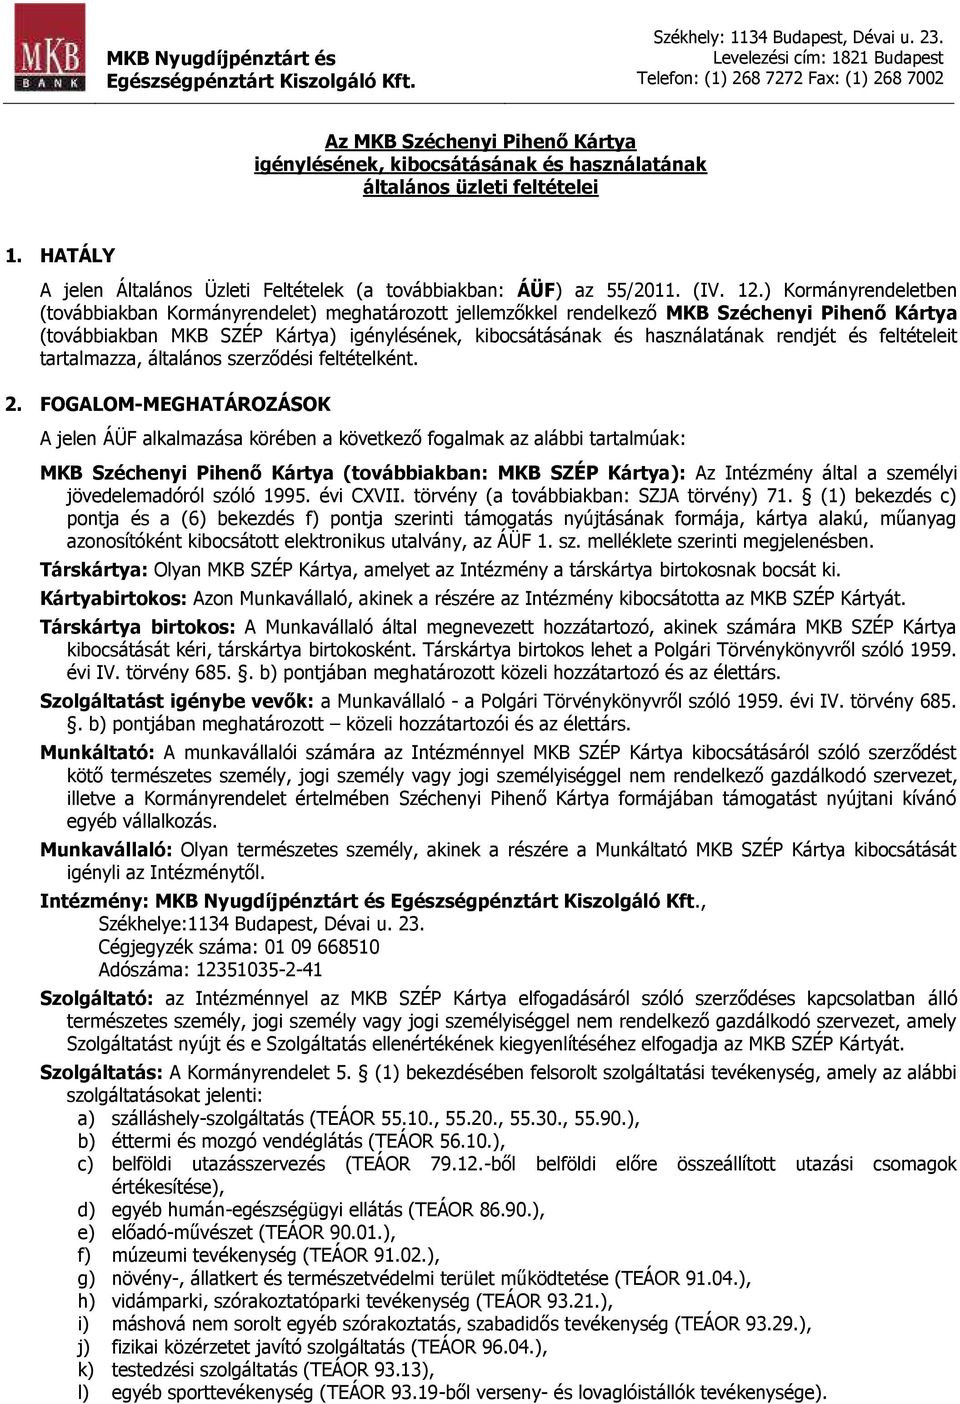 Az MKB Széchenyi Pihenő Kártya igénylésének, kibocsátásának és  használatának általános üzleti feltételei - PDF Free Download